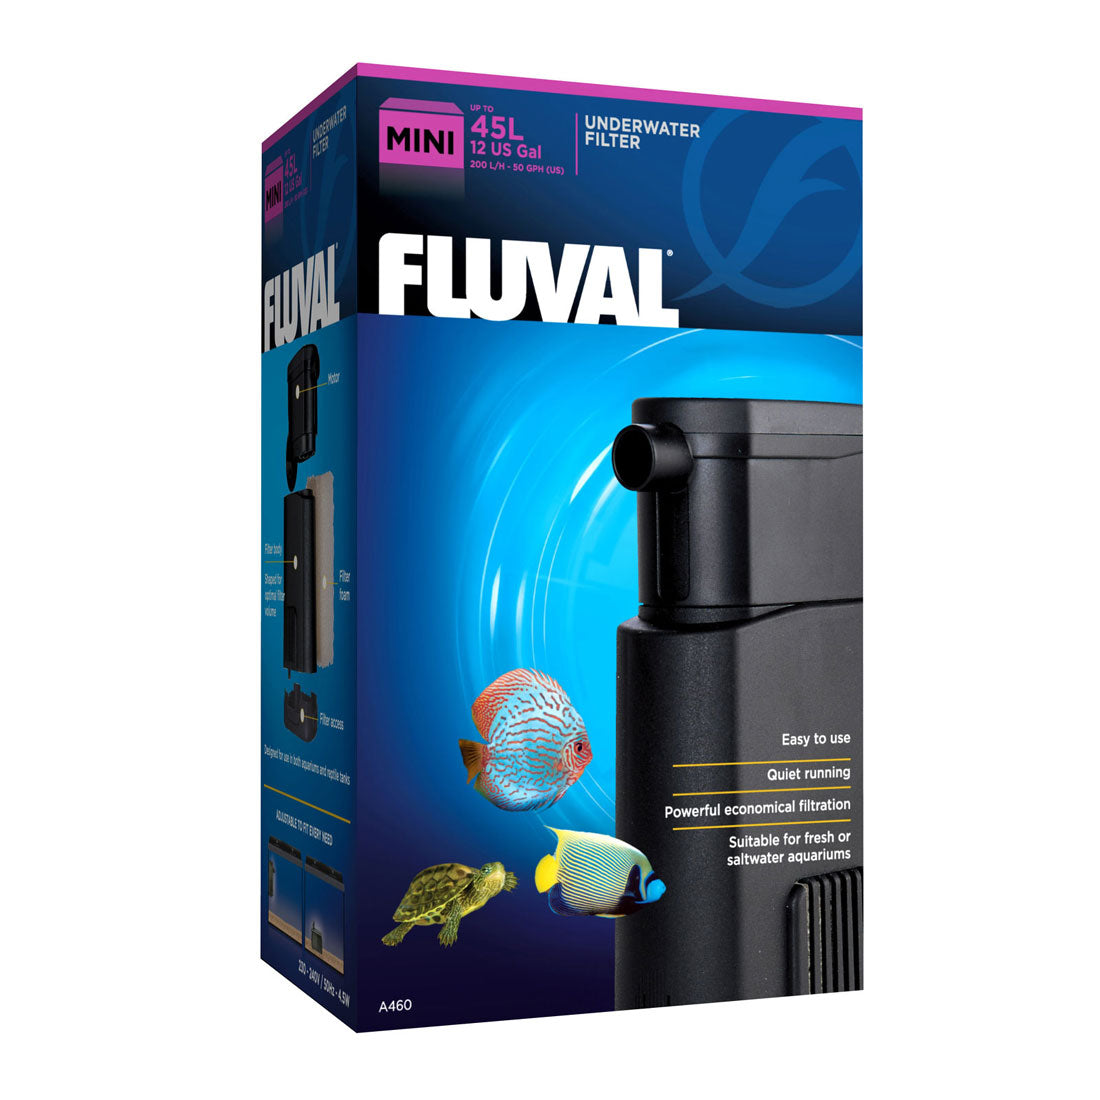 Fluval Internal Filter Mini